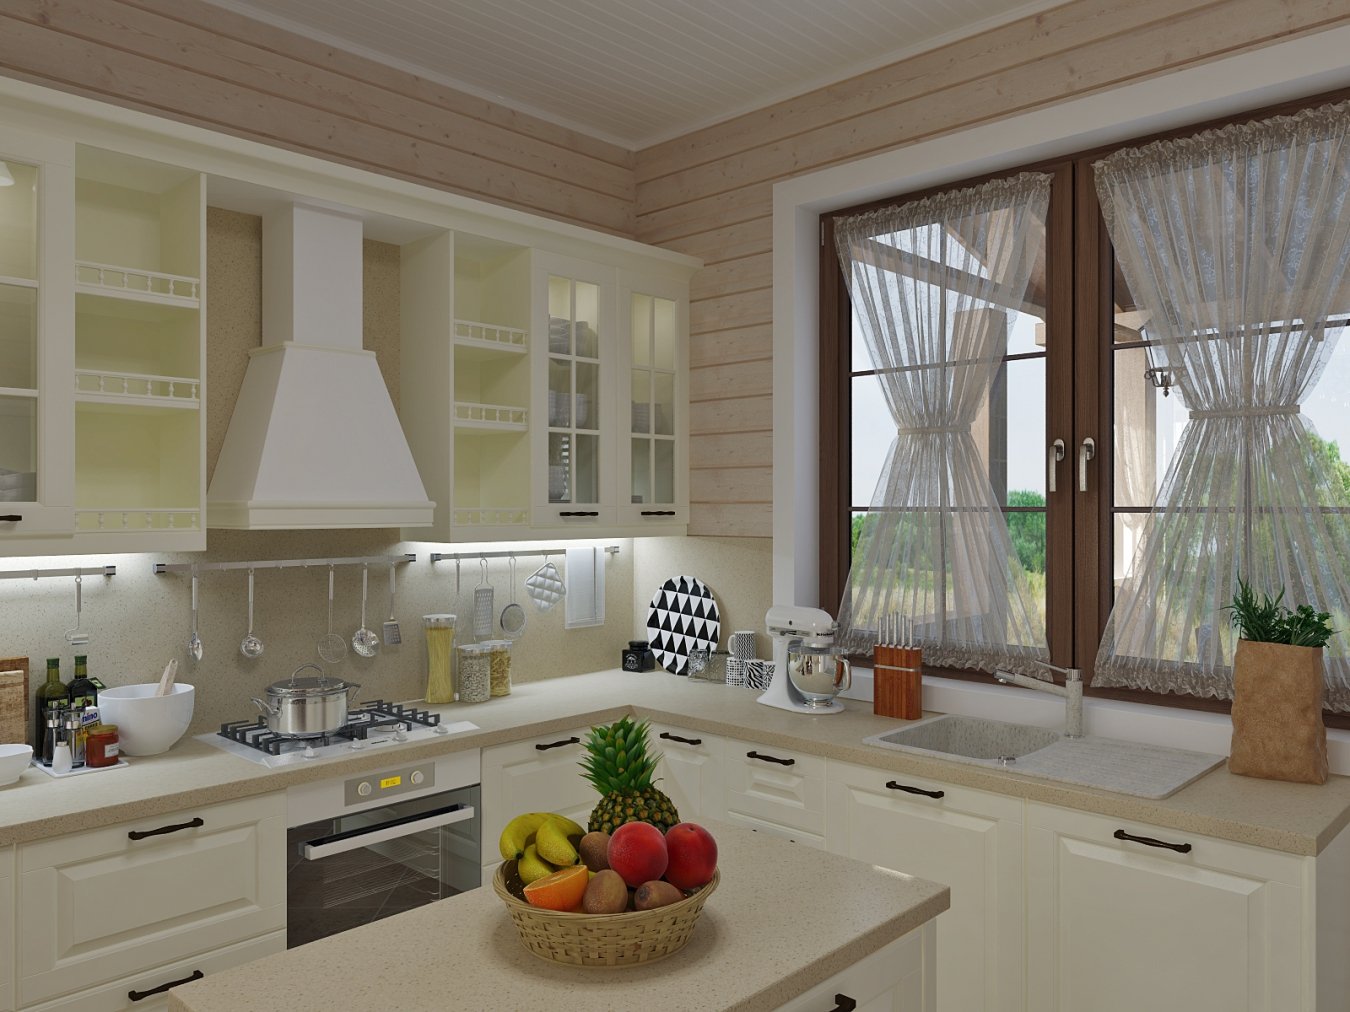 Кухня 3 3 дизайн с окном. Кухня в доме с окном. Кухни в загородном доме с окном. Кухня с окном в частном. Угловая кухня с окном в частном доме.